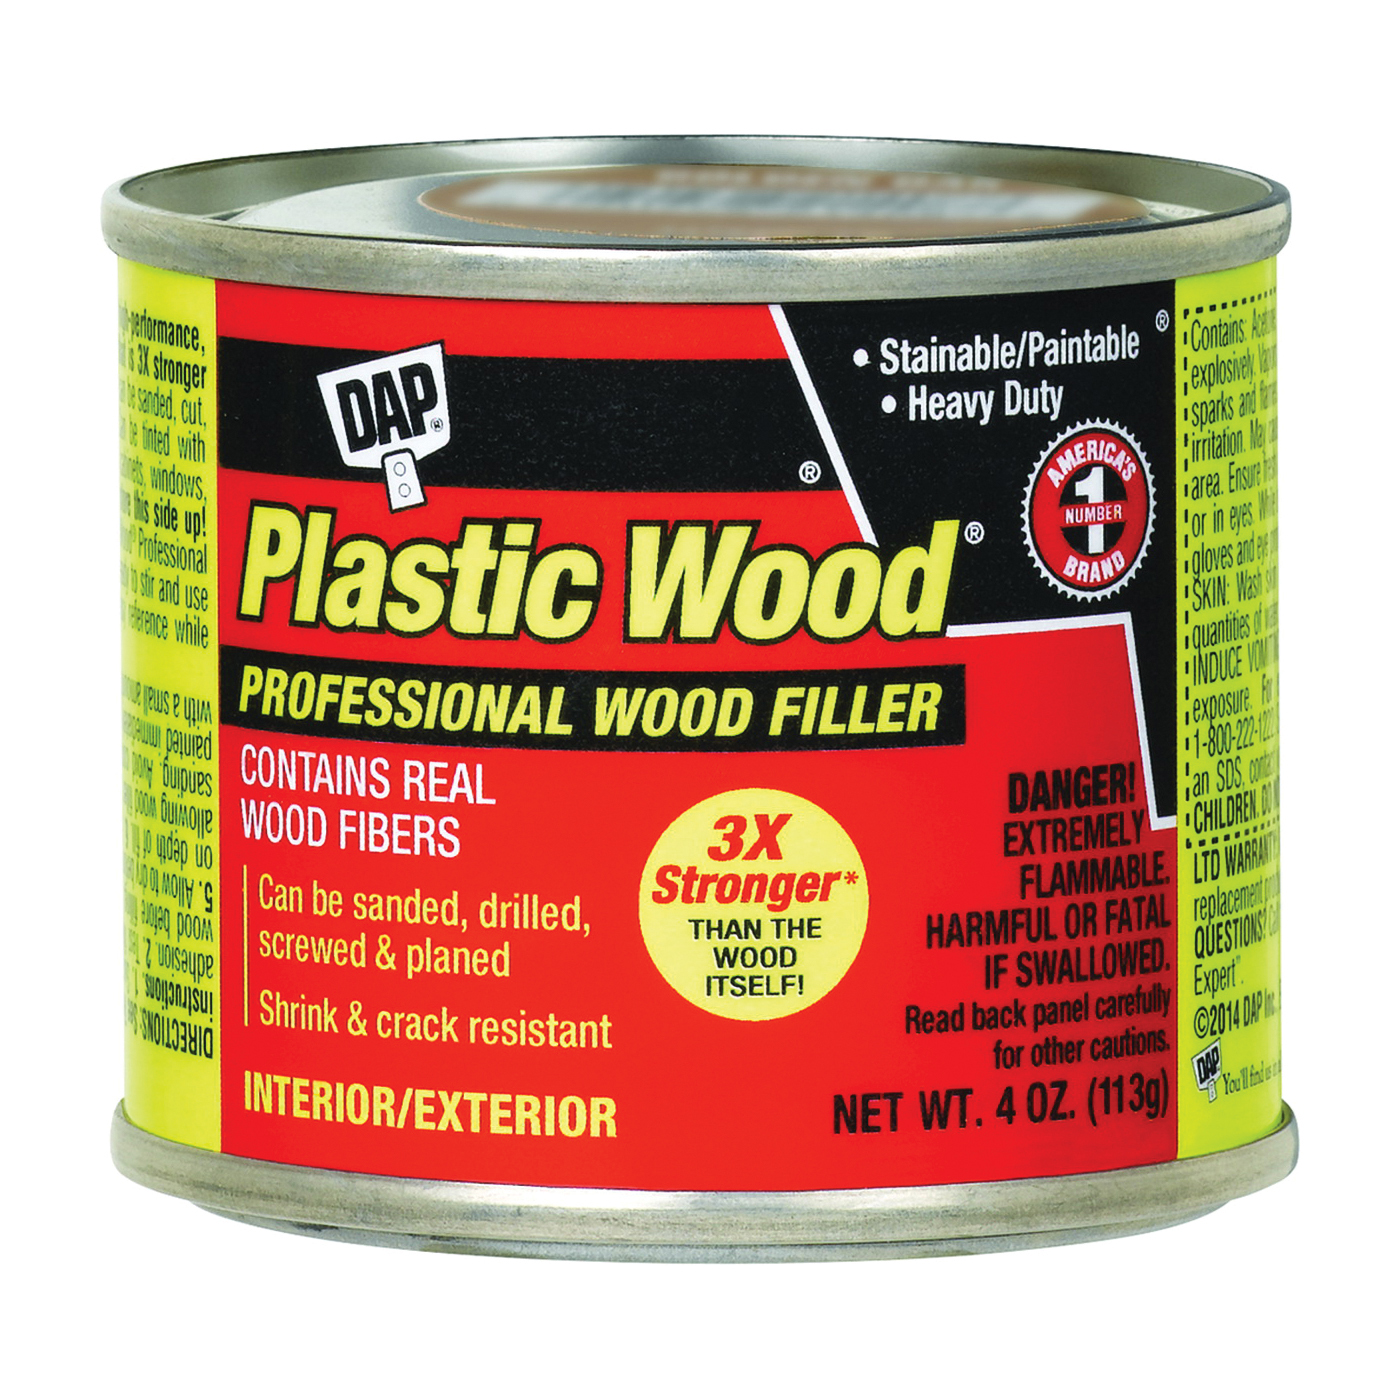 Dap 21506 Plastic Wood Filler, 16-Ounce - Exterior Wood Filler